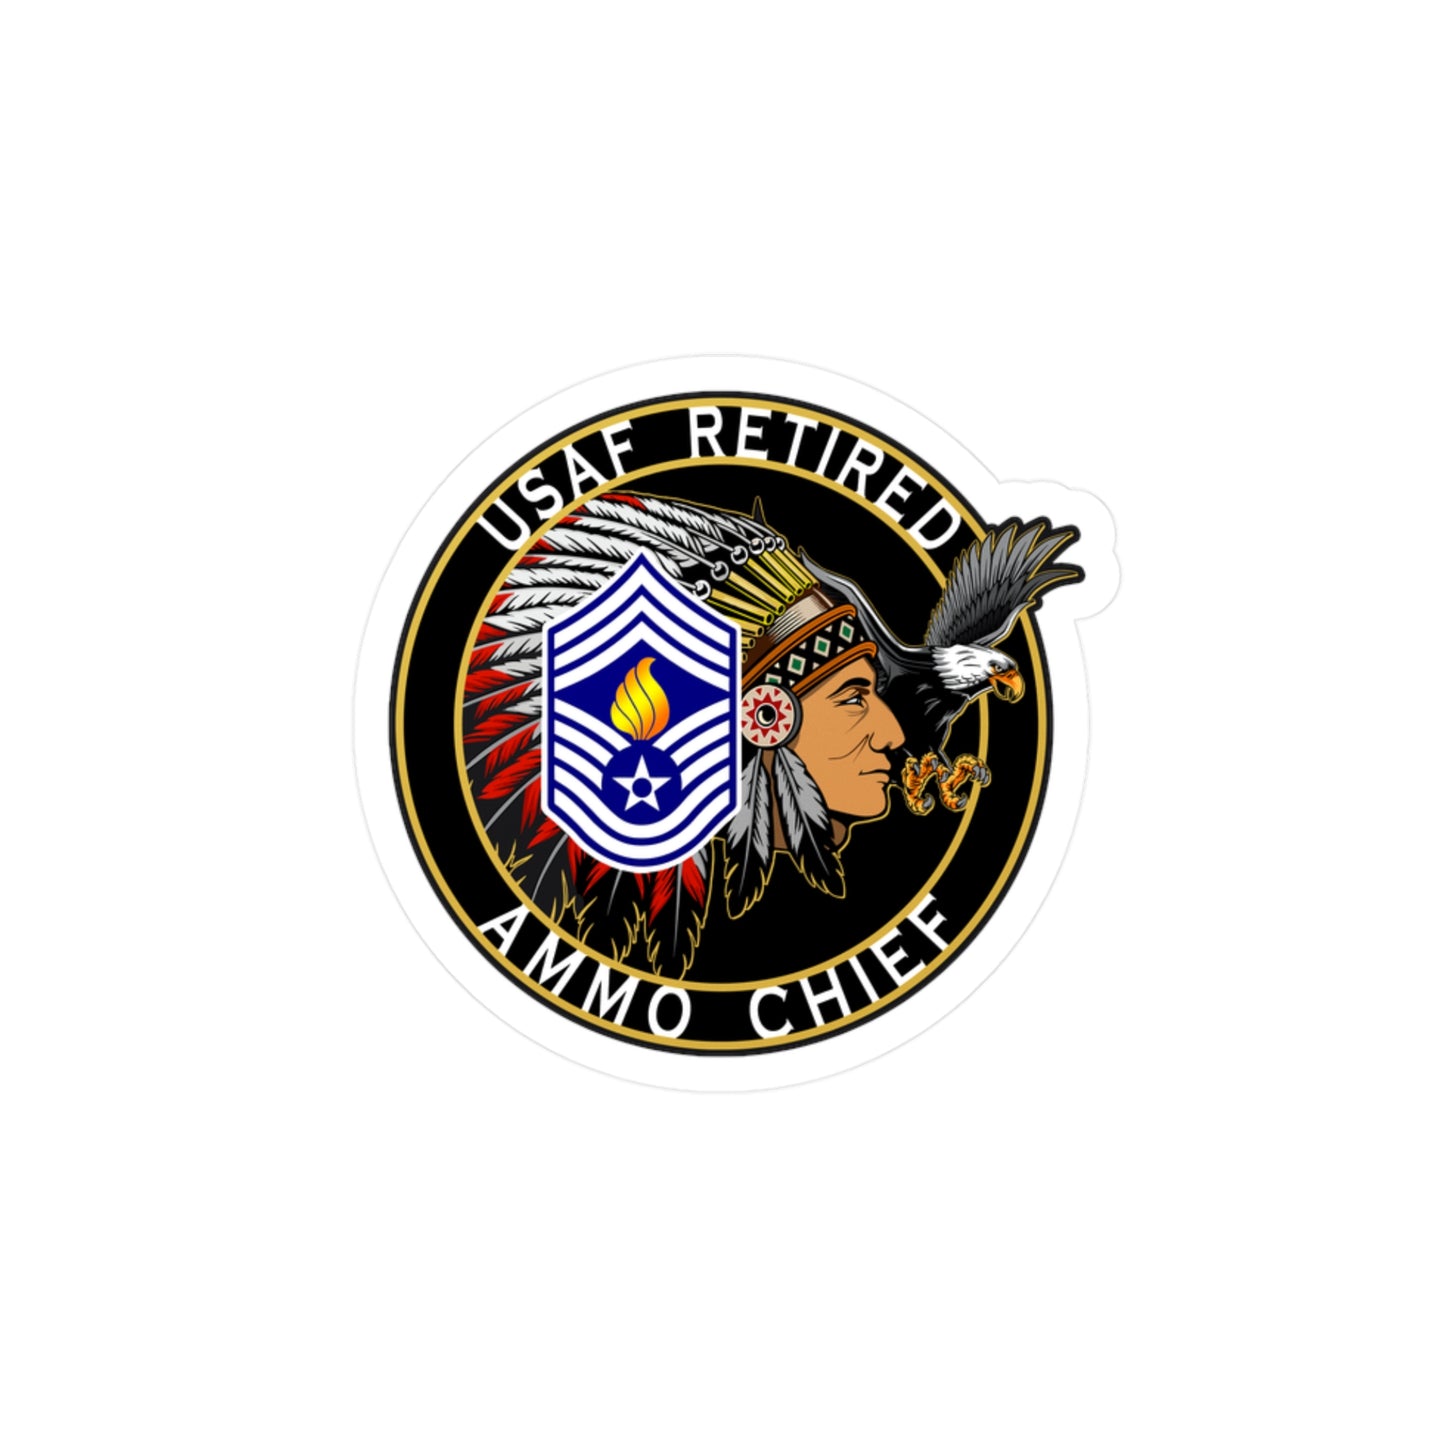 USAF AMMO Chief Retired Circular Logo Kiss-Cut Vinyl Decals